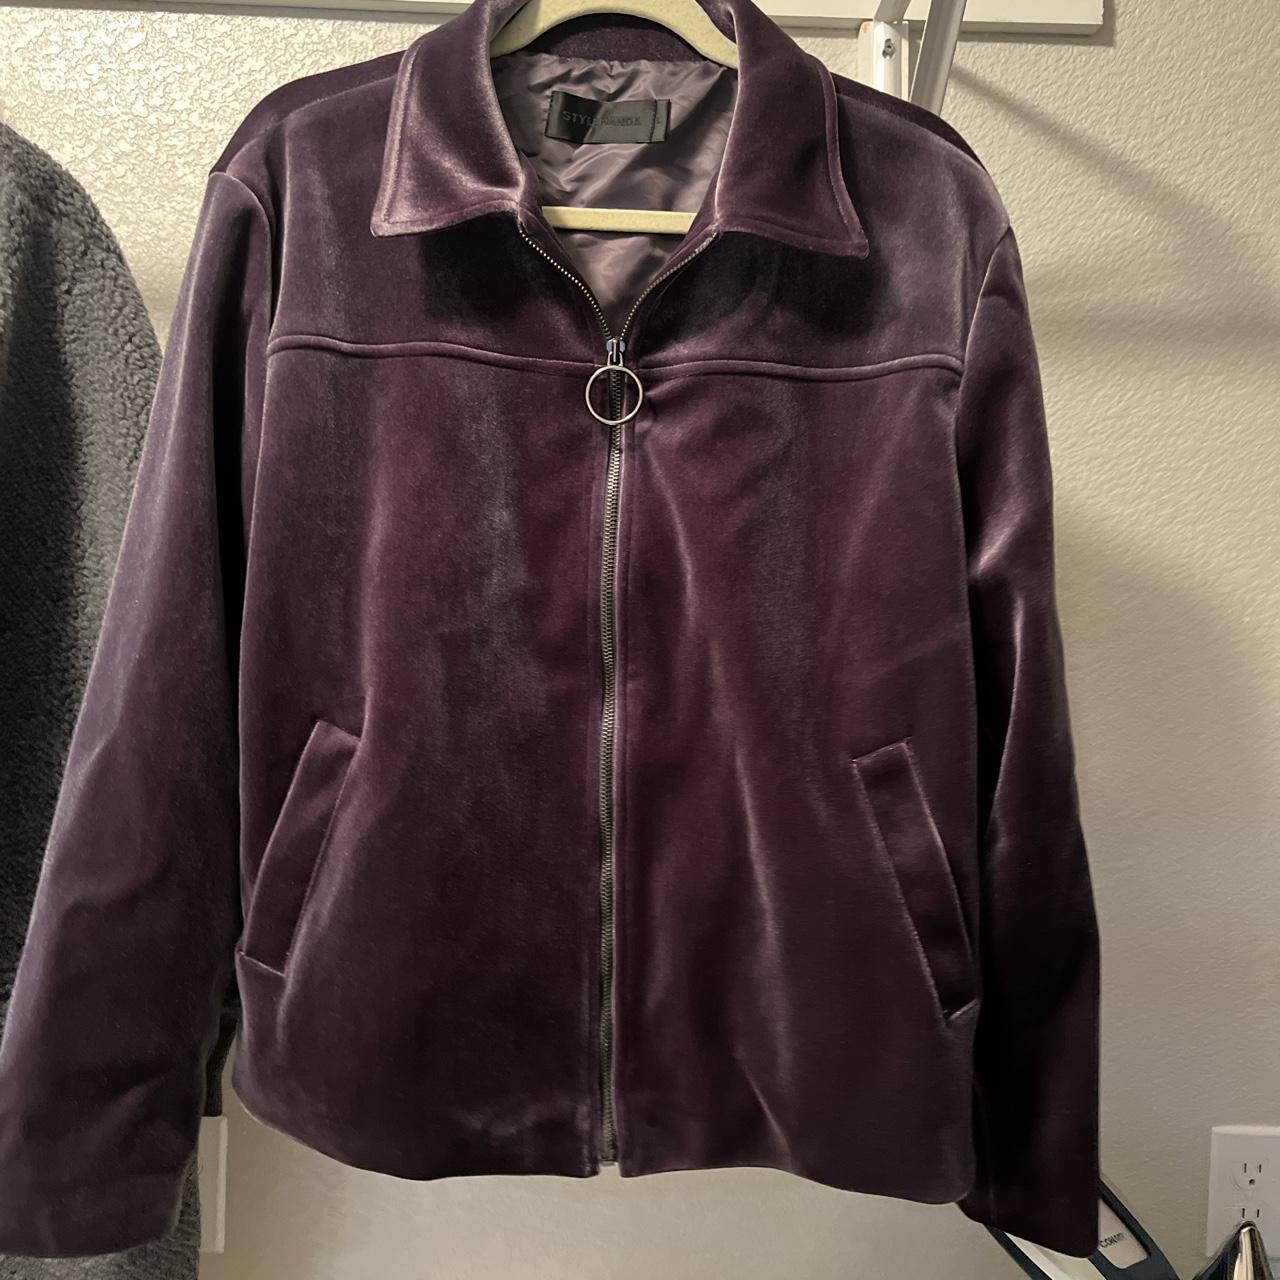 Product Image 1 - large stylenanda velvet(een?) jacket

#stylenanda #jacket